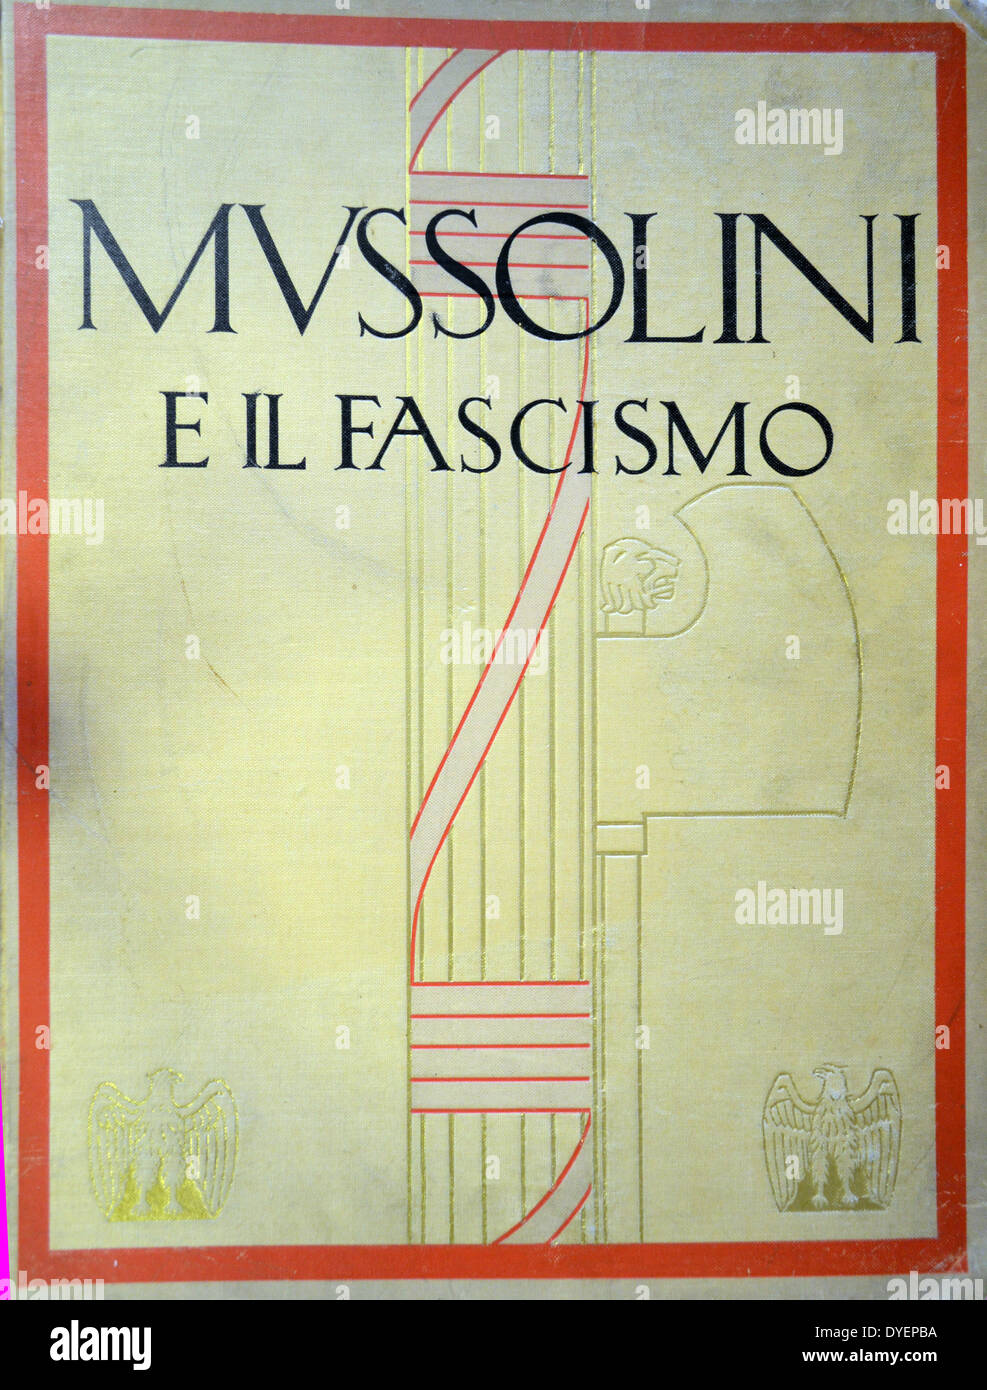 Fasces simbolo del fascismo in Italia sotto Benito Mussolini, era basato su un antico romano imperiale simbolo di potere portati da lictors davanti a magistrati; un fascio di bastoni con un'ascia, indicando il potere sulla vita e la morte. Foto Stock